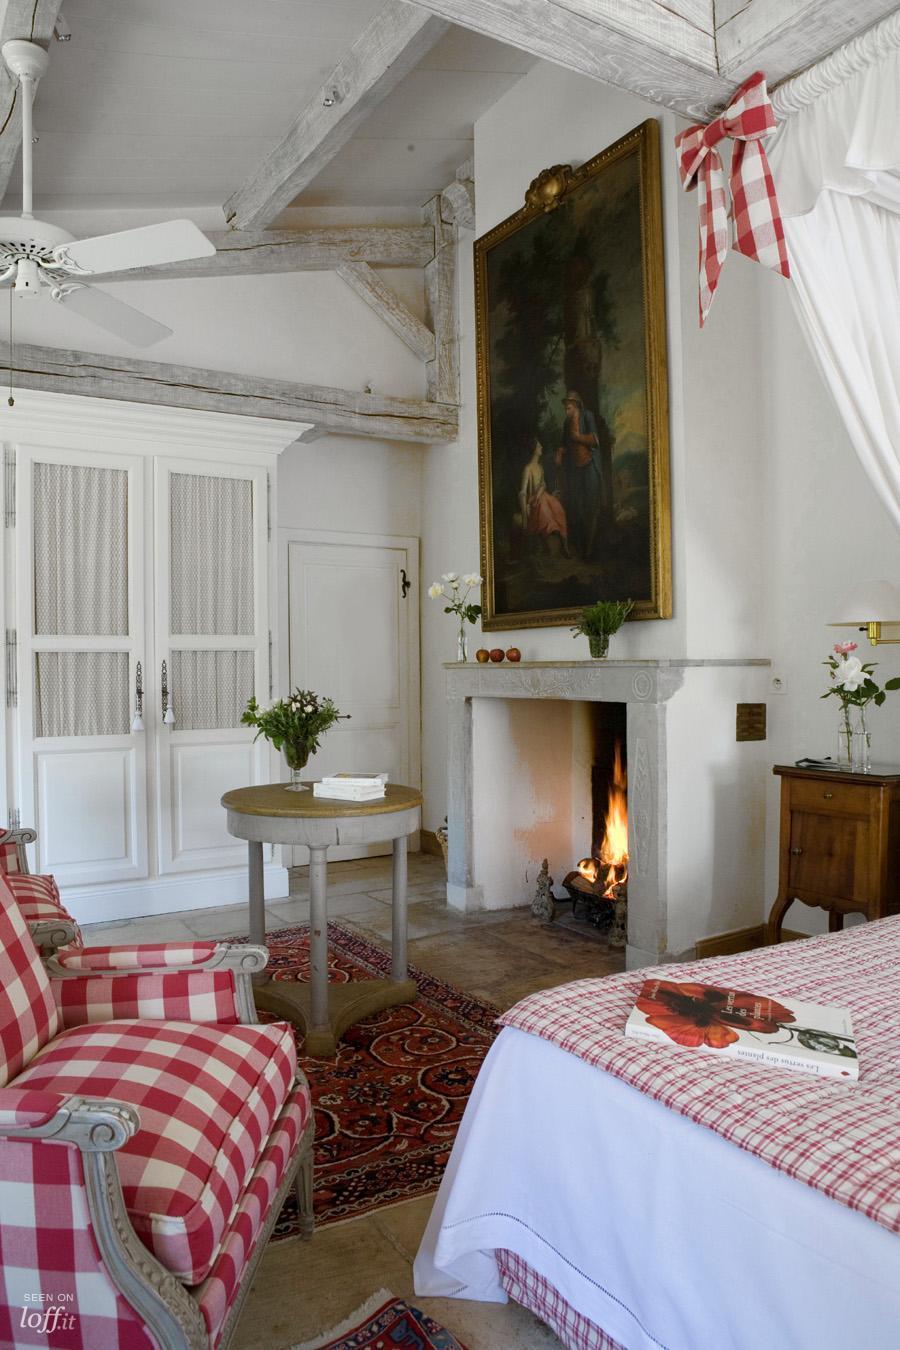 imagen 2 de Les Prés d’Eugénie, uno de los espacios más románticos y exquisitos del planeta.